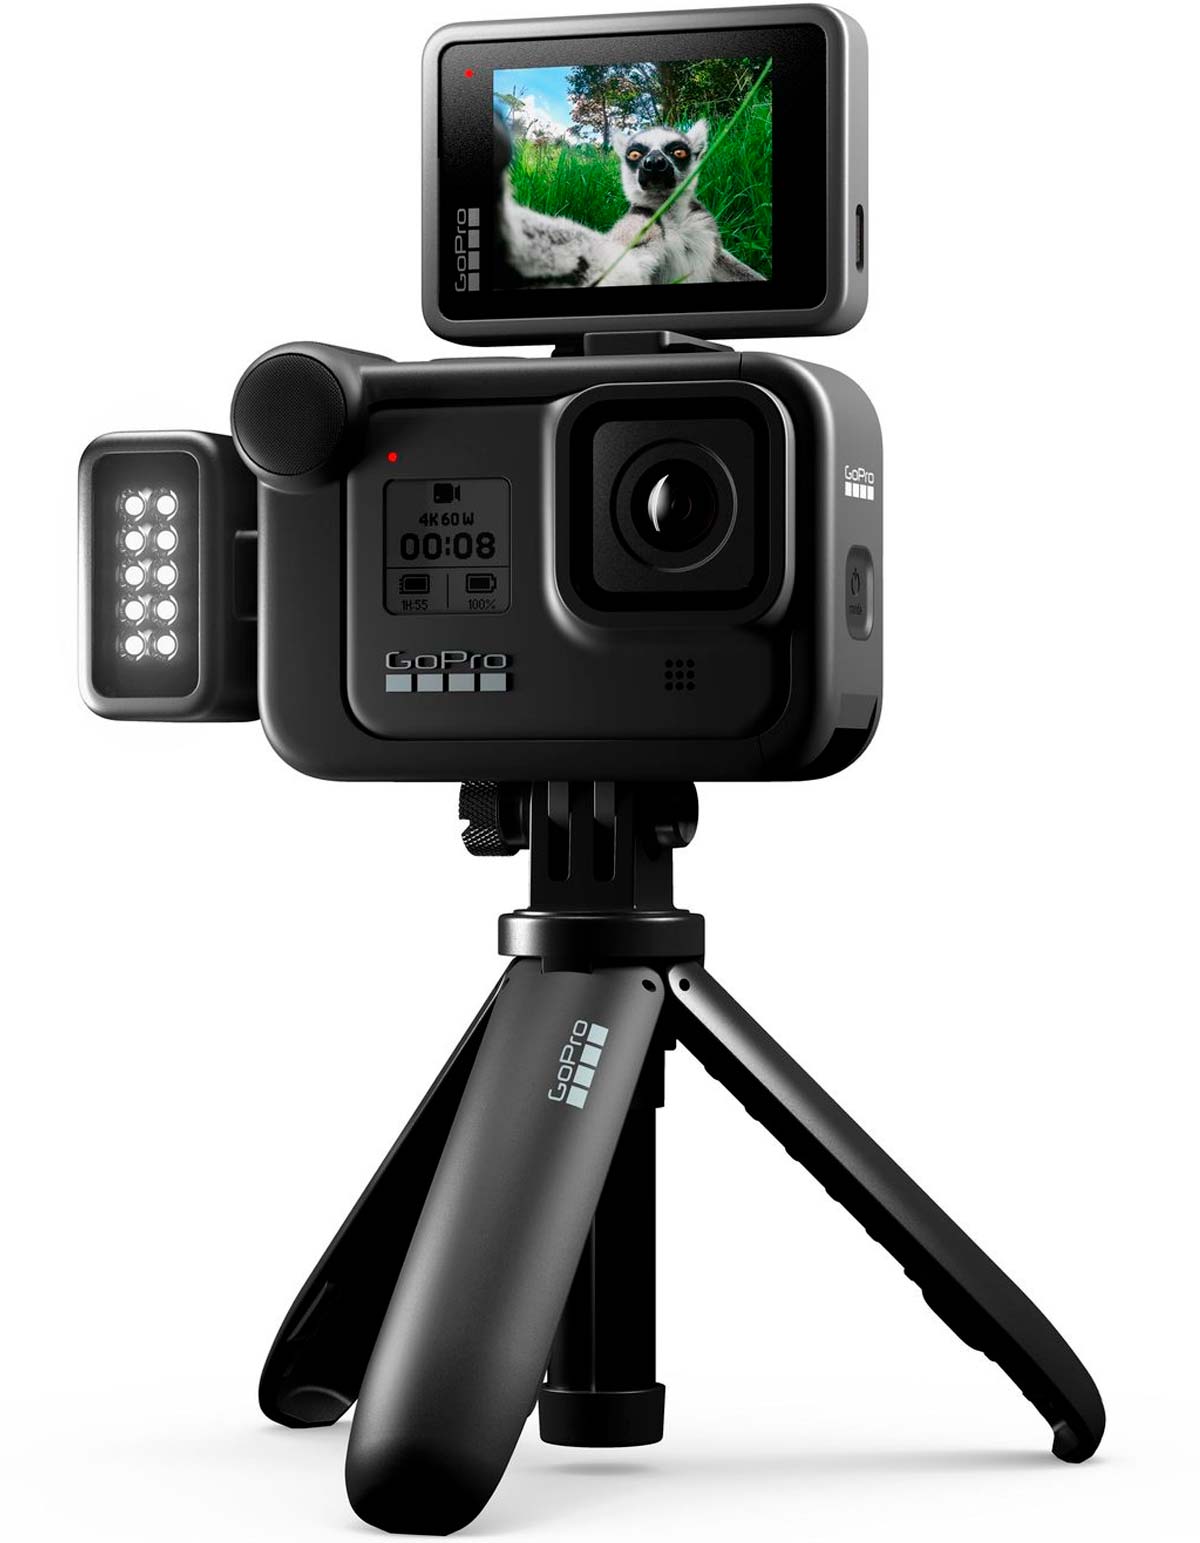 Presentada oficialmente la GoPro Hero 8 Black: sus y precio